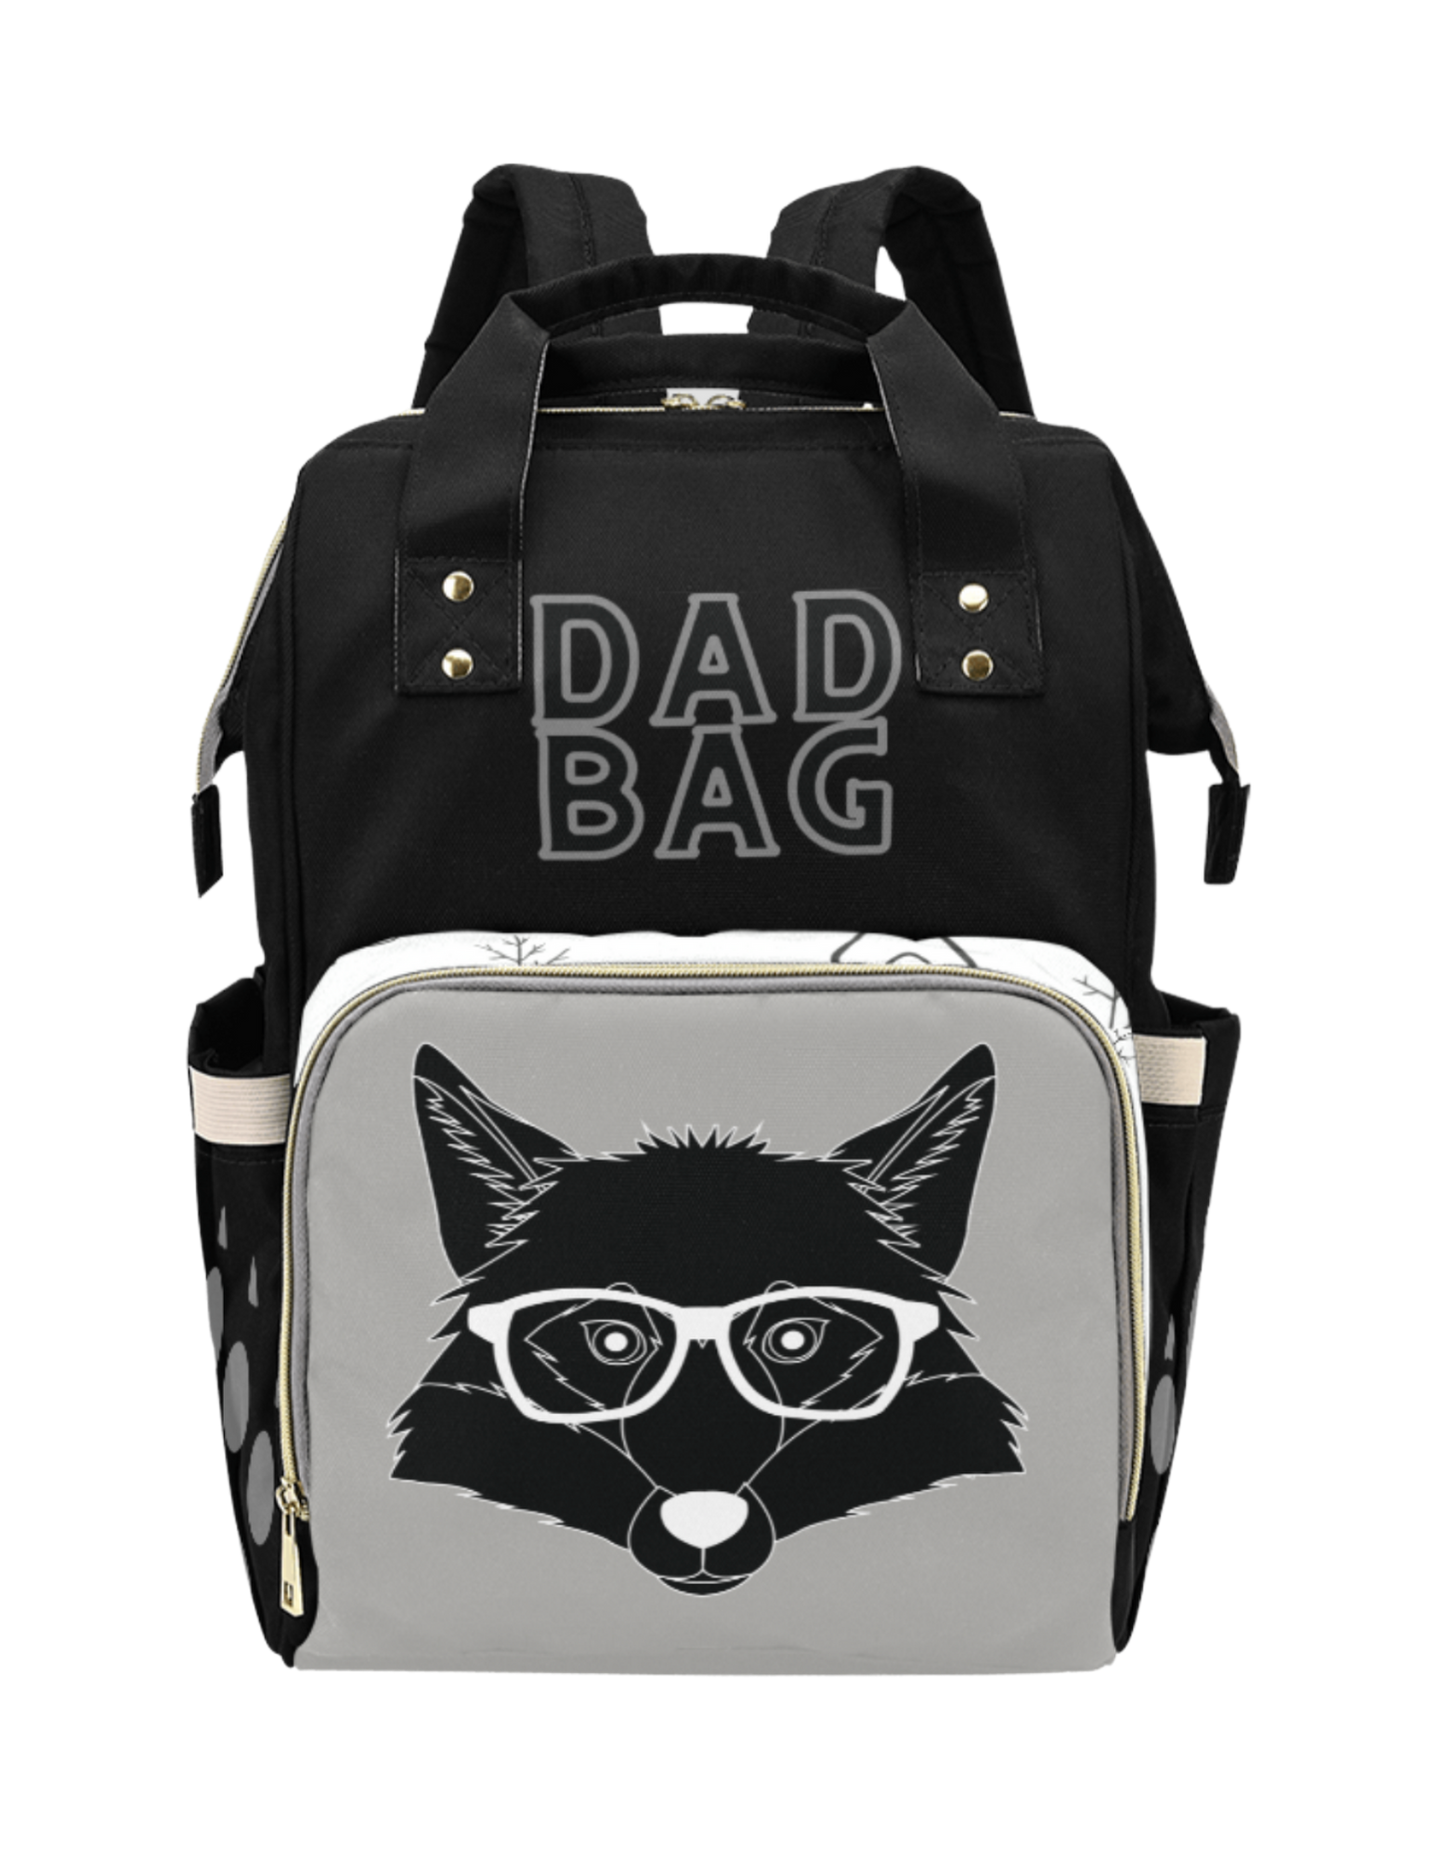 Dad Bag Custom Multi-Function Diaper Backpack